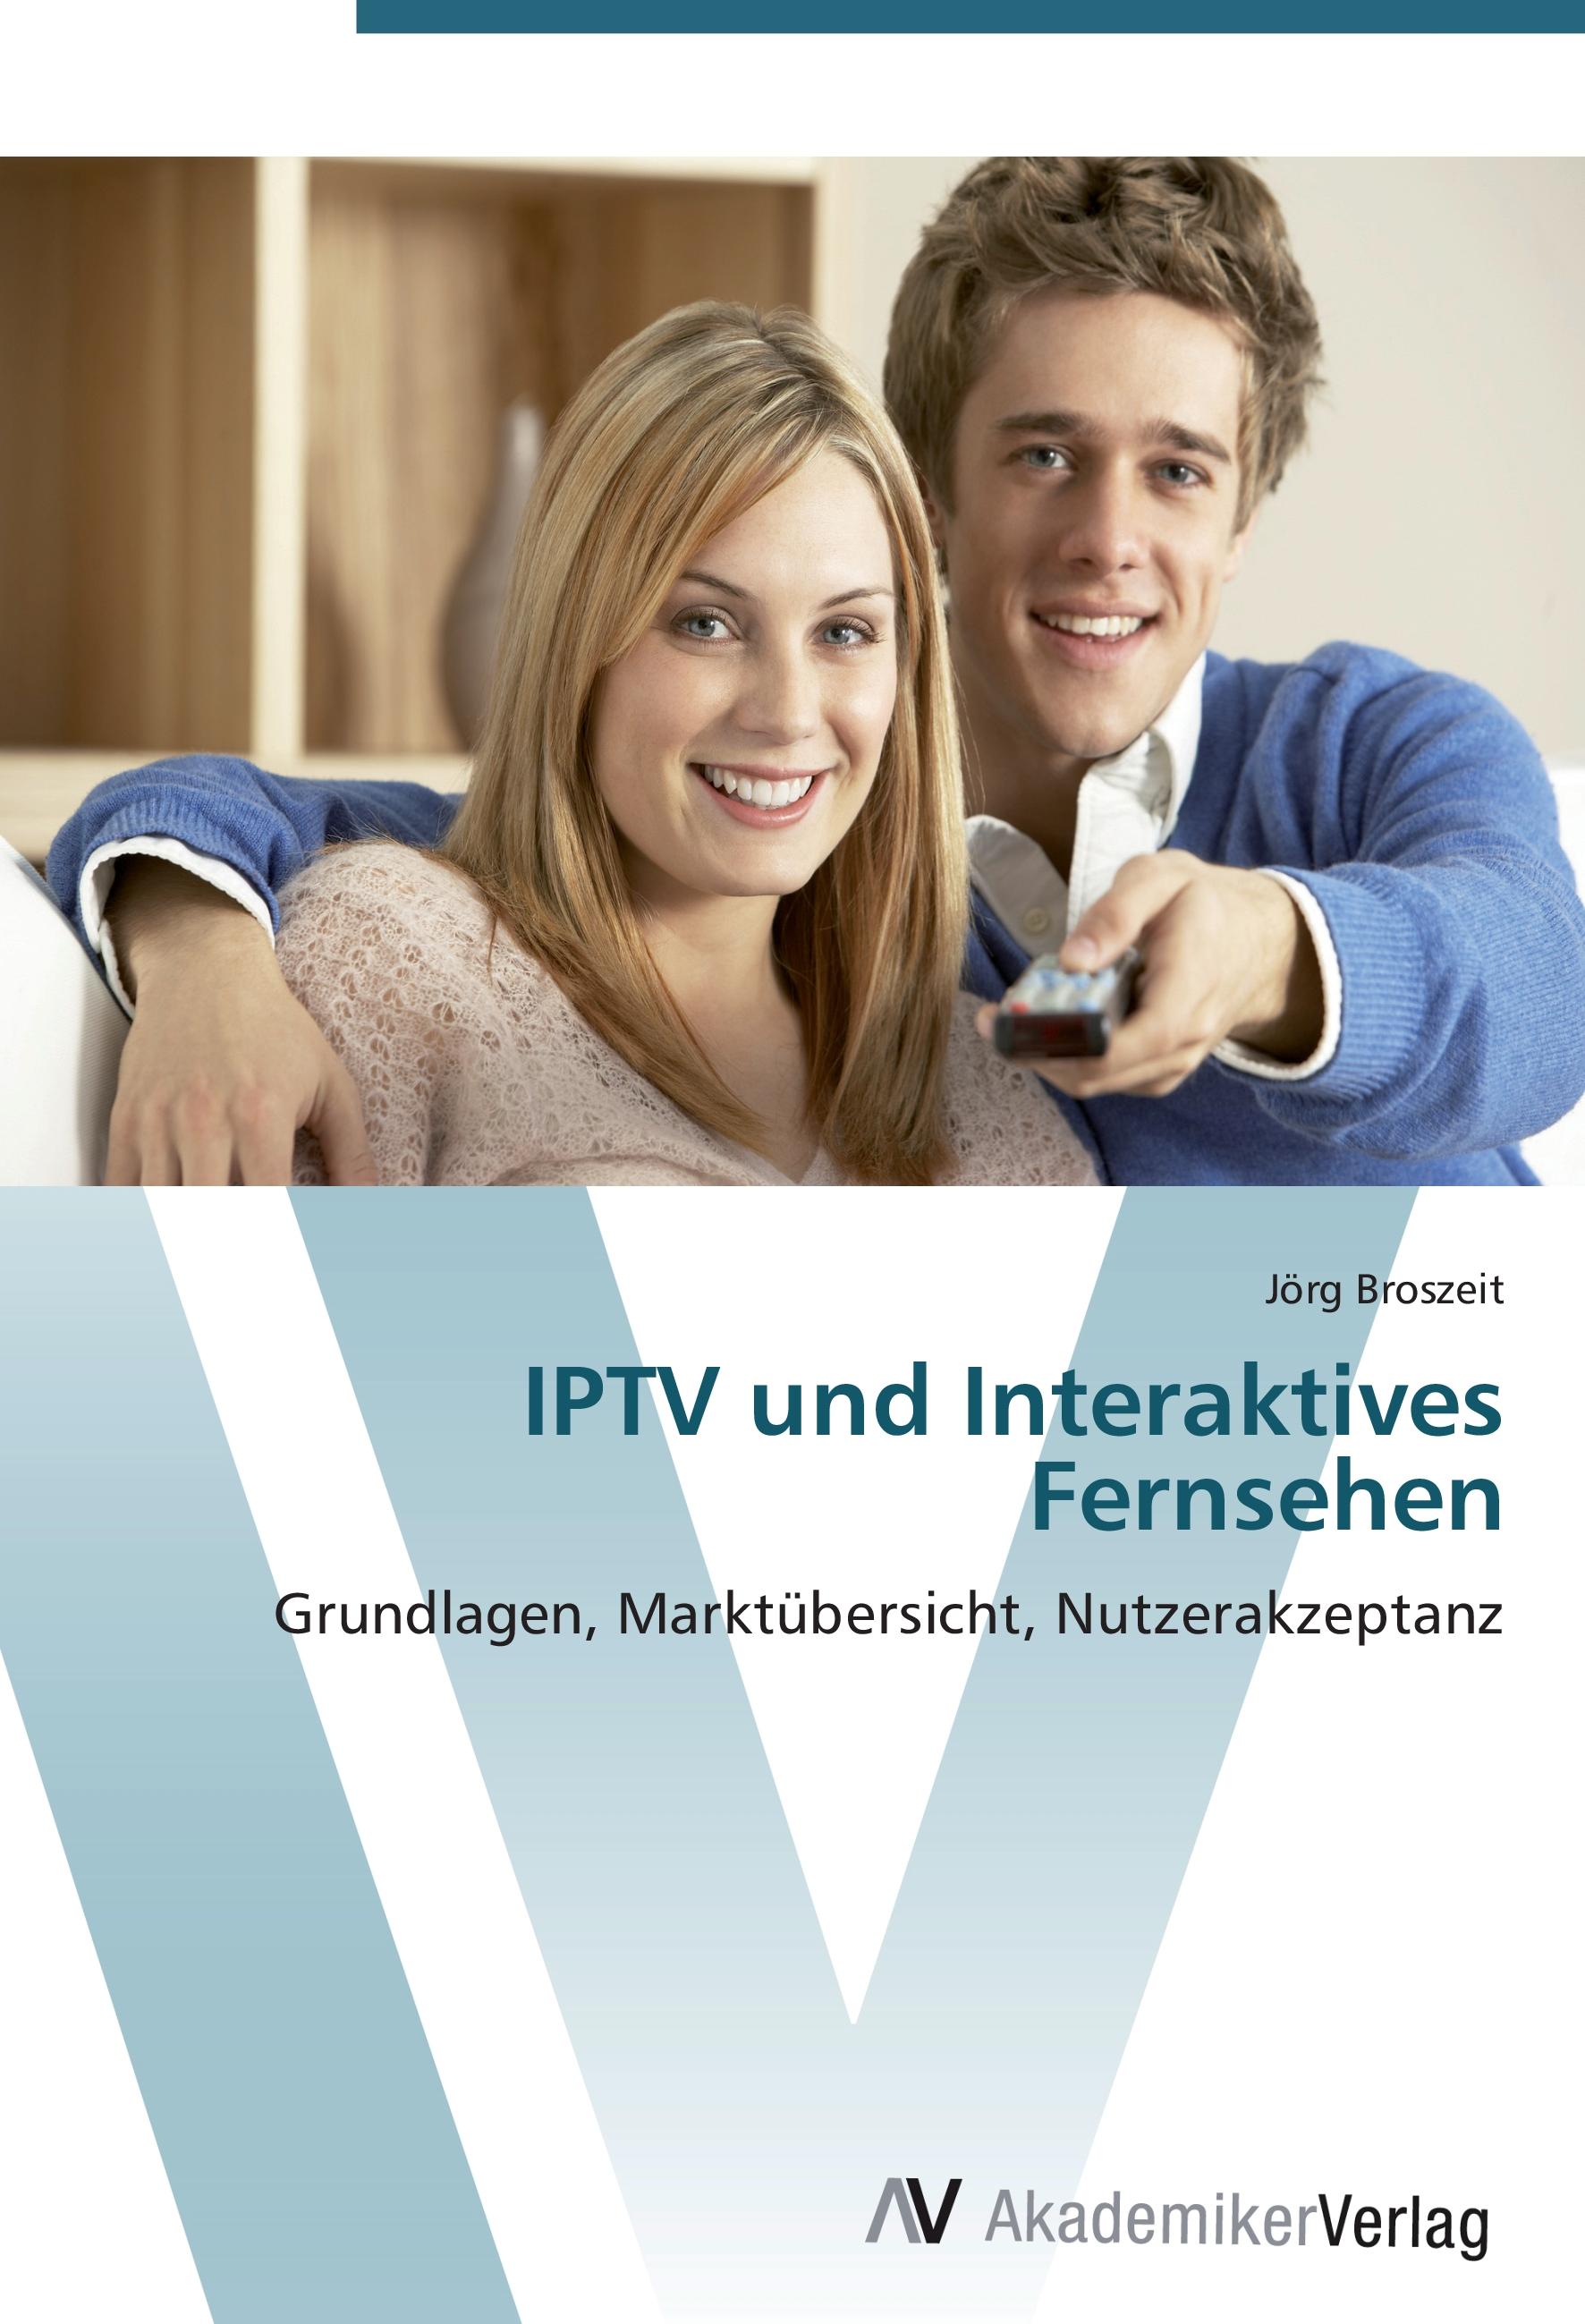 IPTV und Interaktives Fernsehen  Grundlagen, Marktübersicht, Nutzerakzeptanz  Jörg Broszeit  Taschenbuch  Paperback  Deutsch  2012 - Broszeit, Jörg